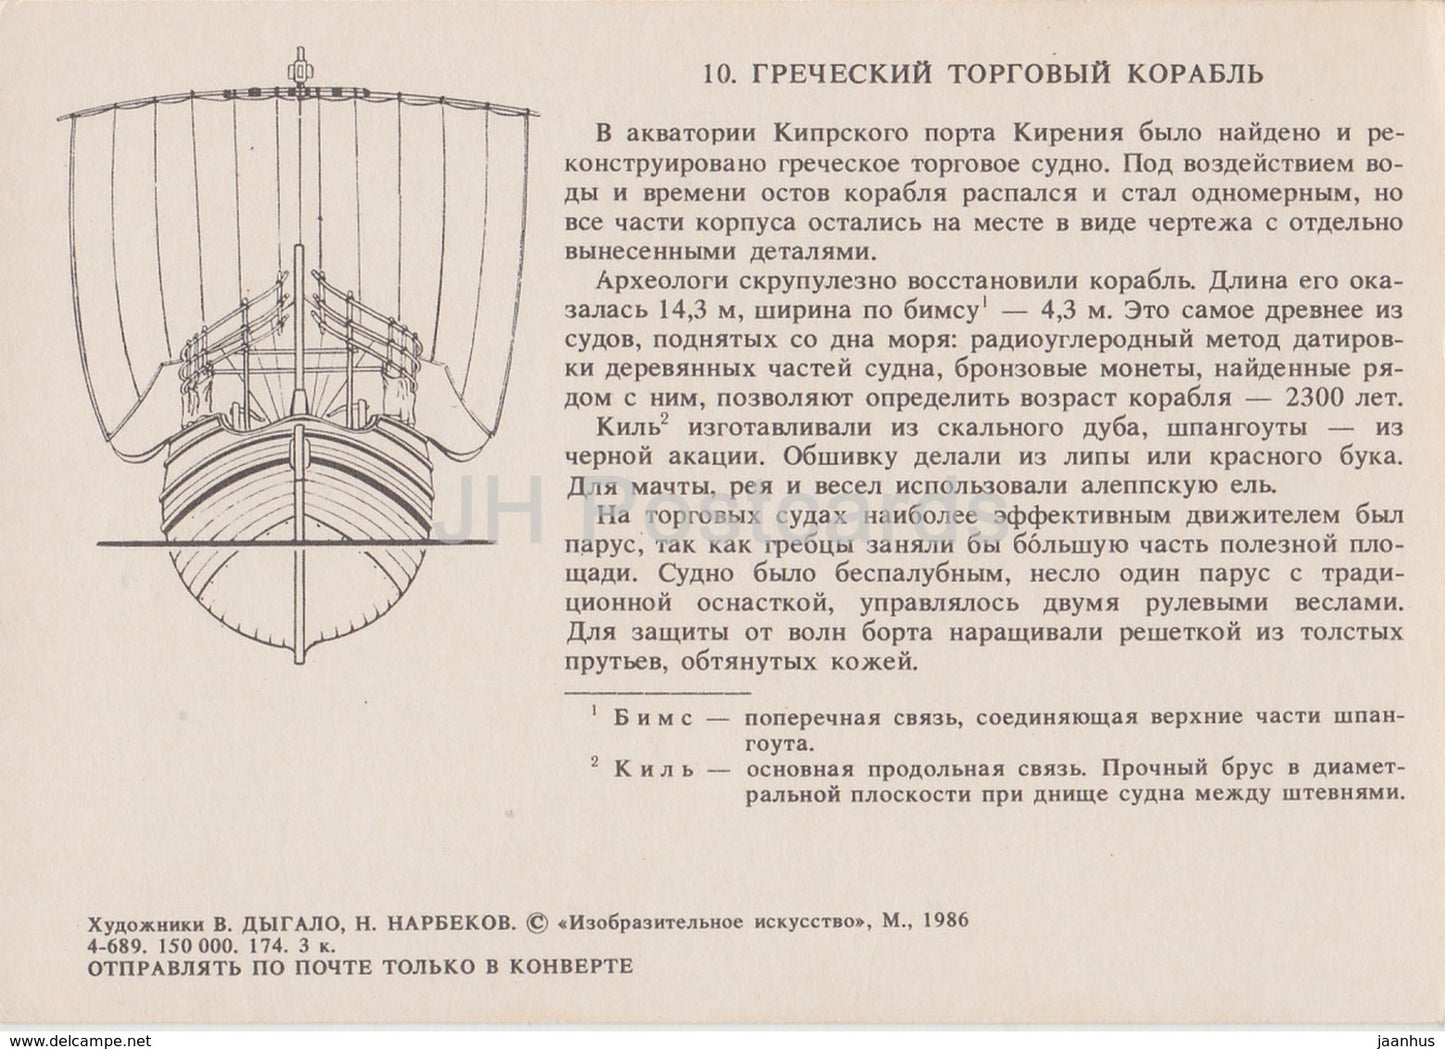 Antikes griechisches Handelsschiff – Illustration – 1986 – Russland UdSSR – unbenutzt